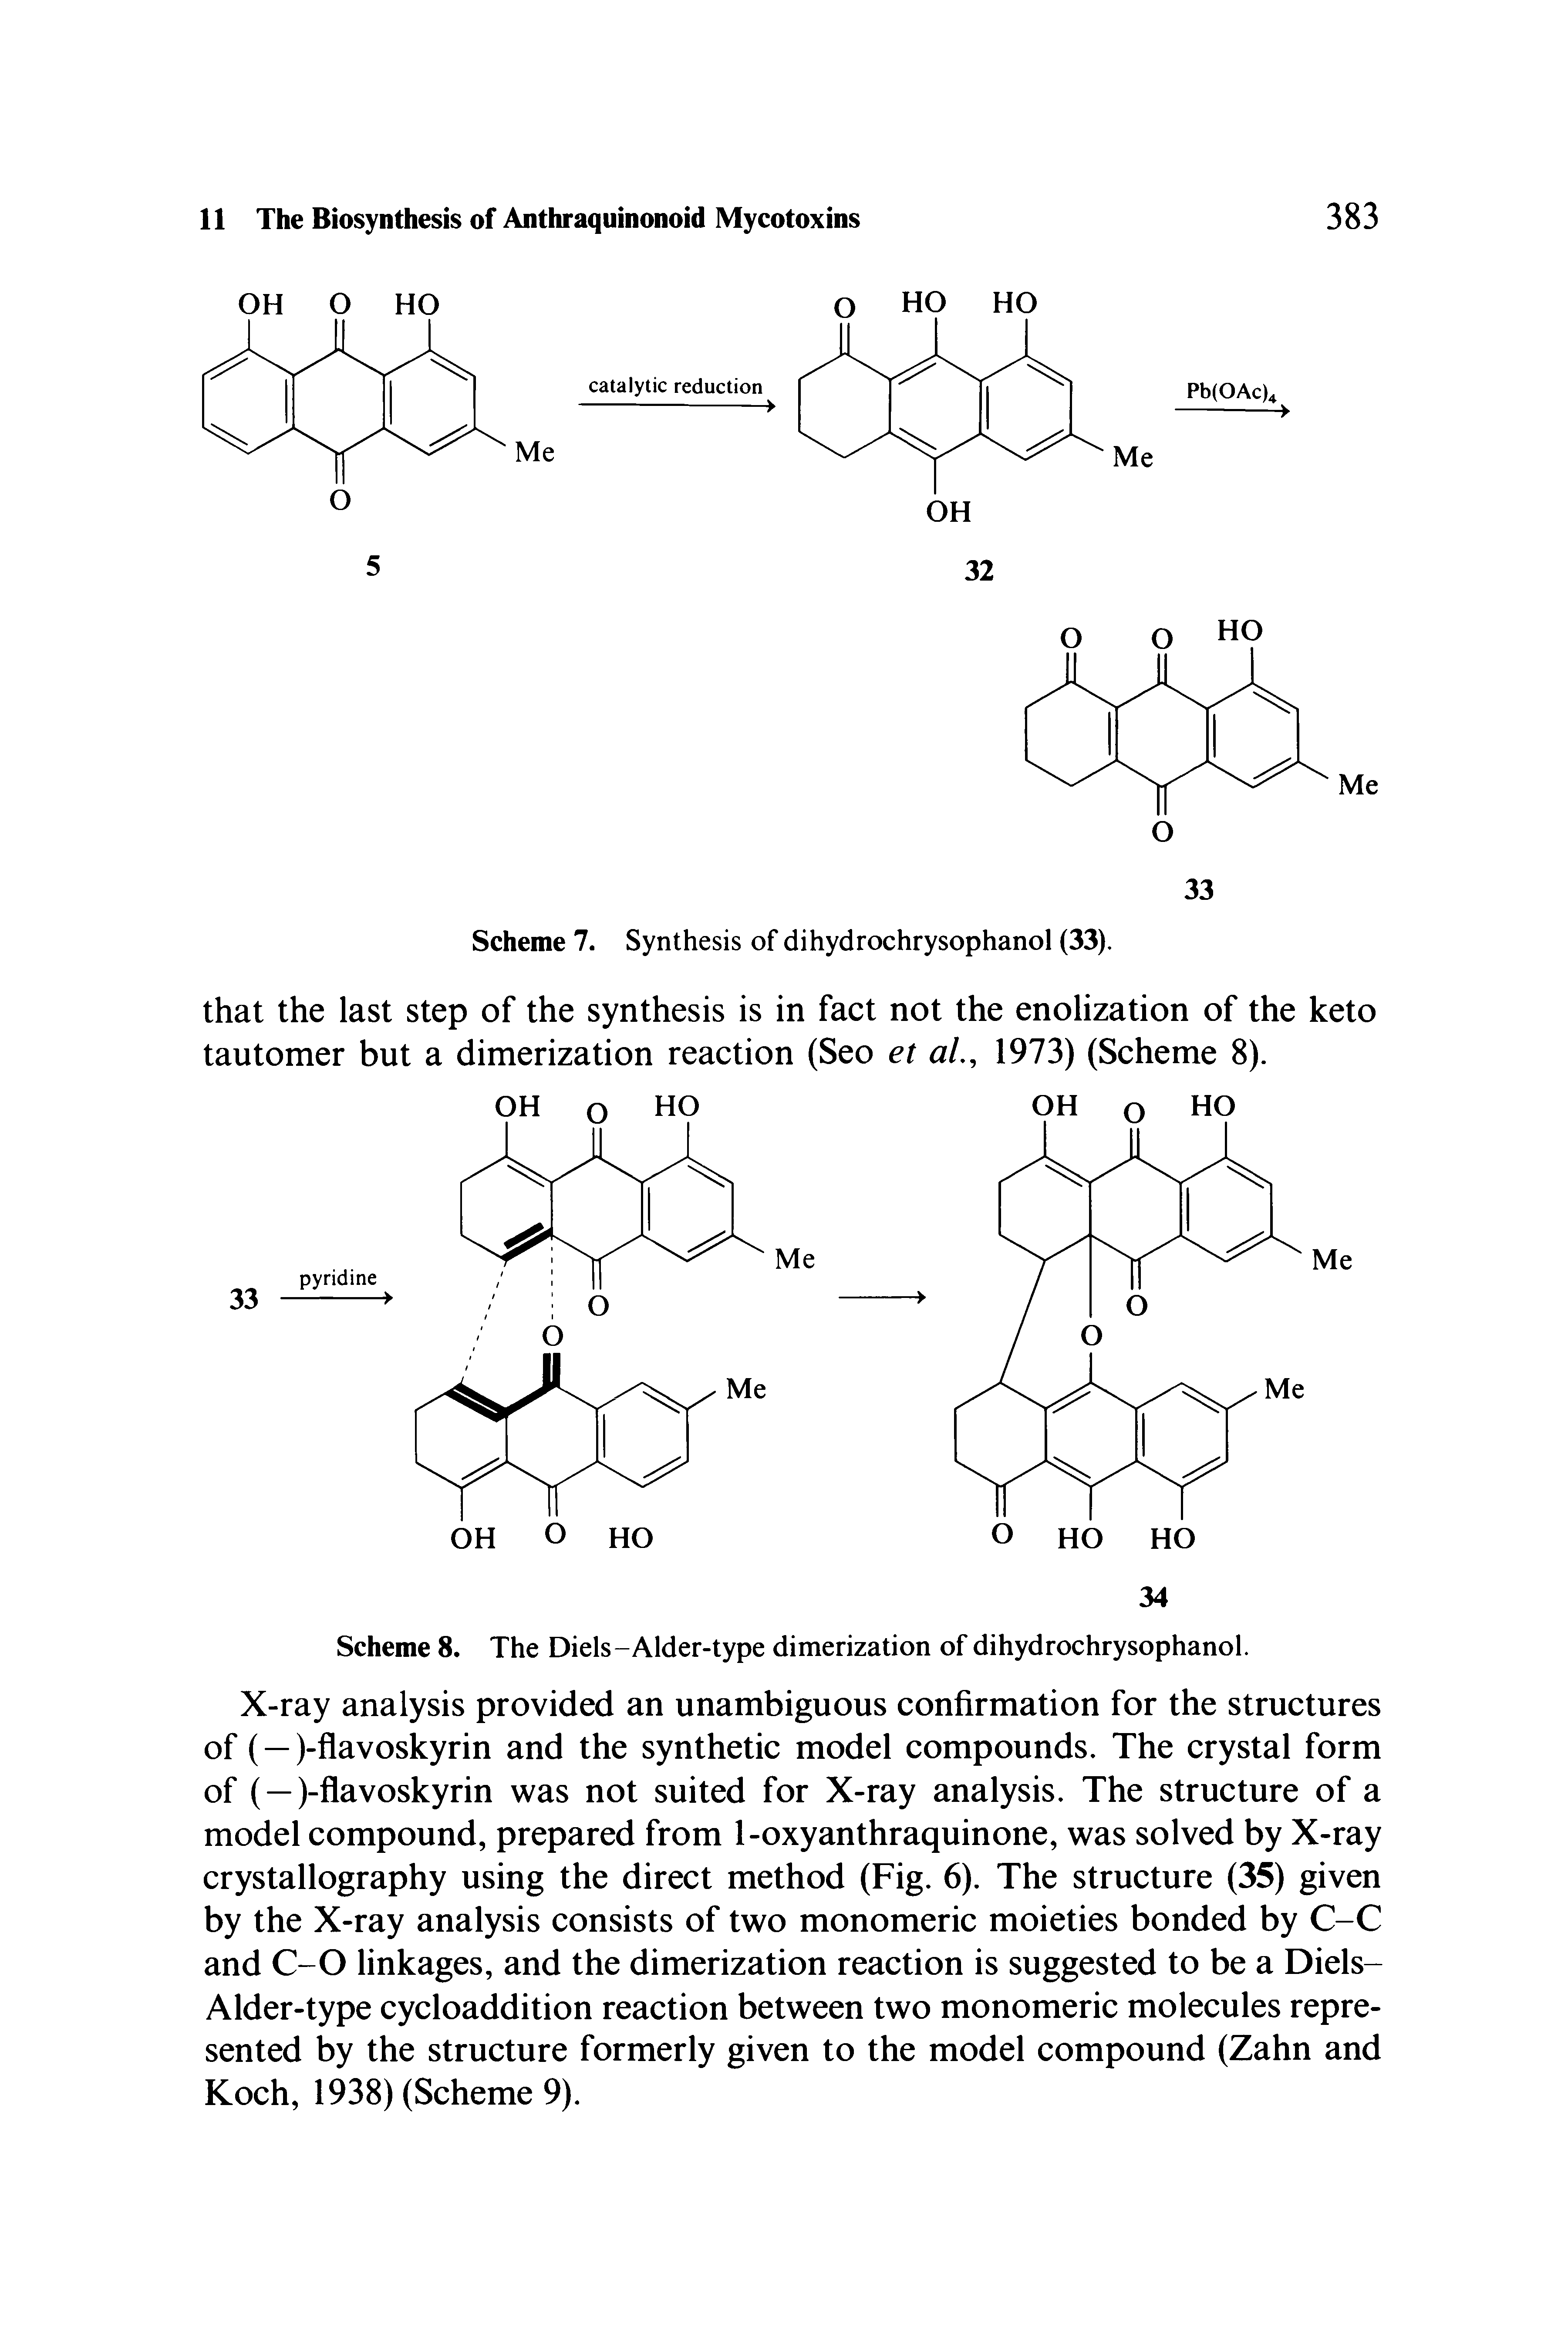 Scheme 8. The Diels-Alder-type dimerization of dihydrochrysophanol.